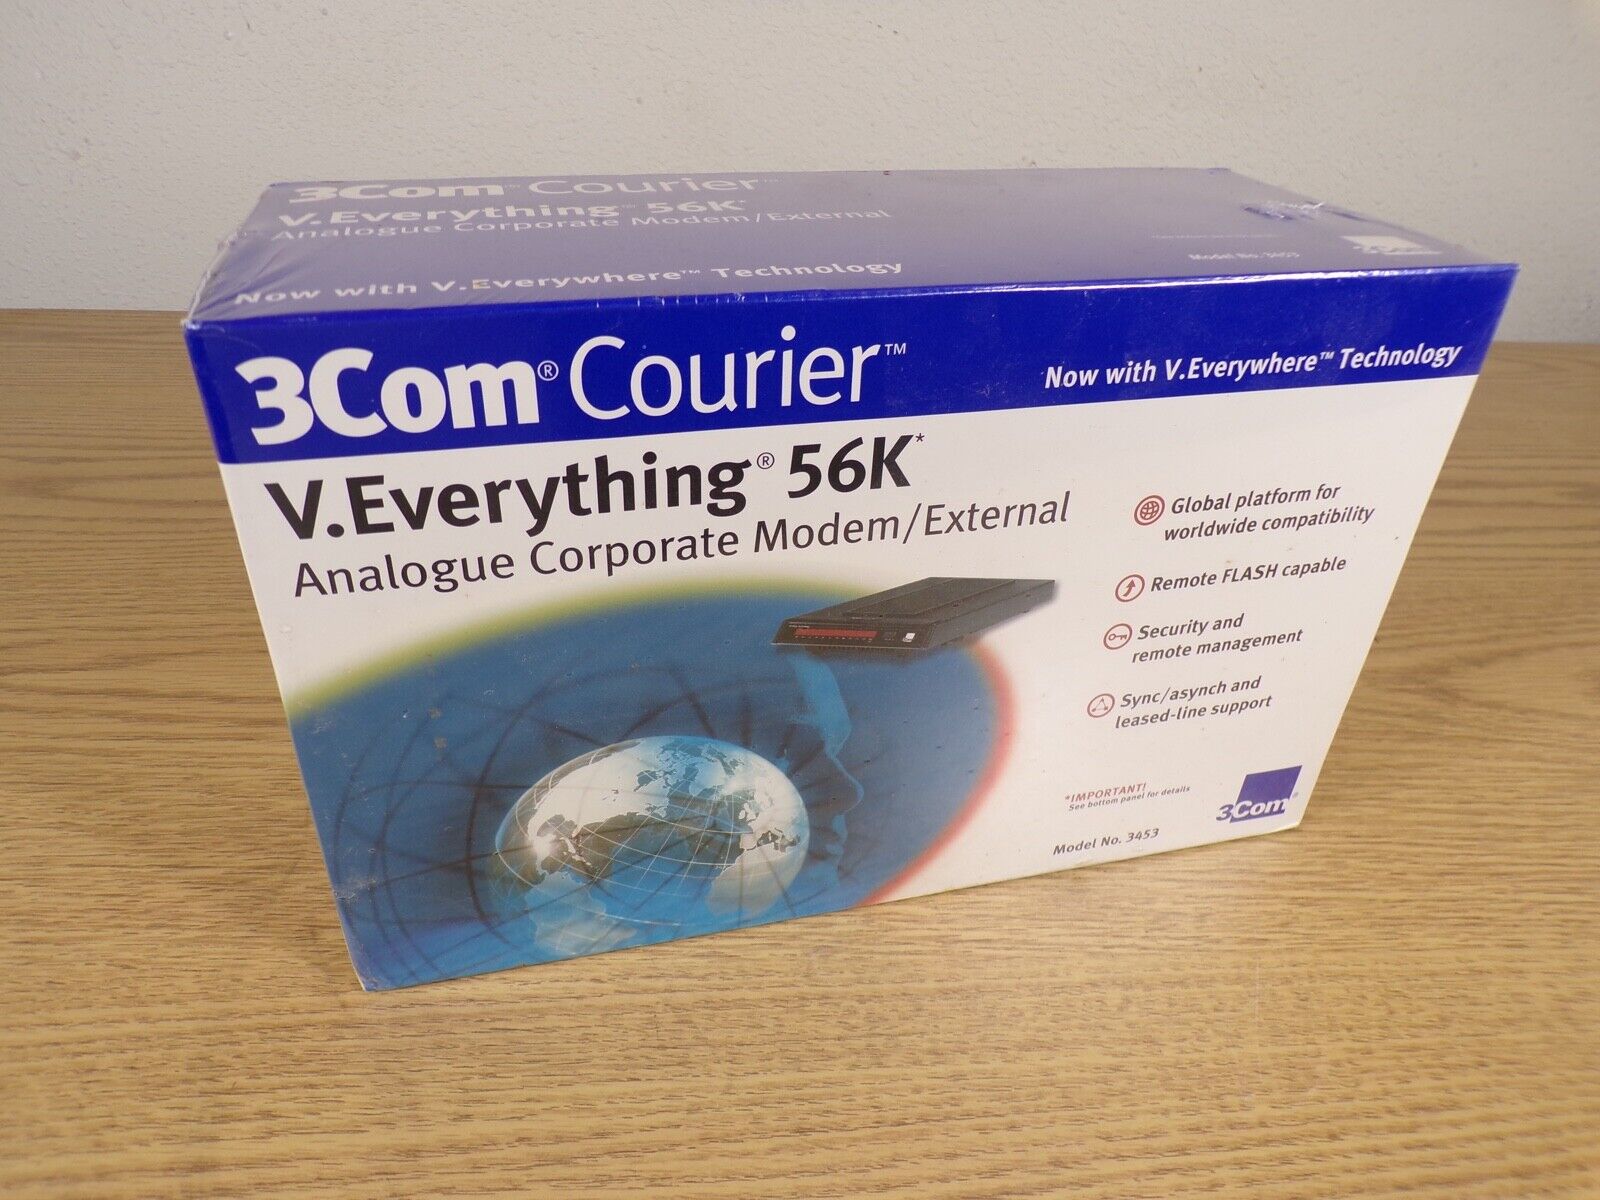 3Com Courier V.Everything 56K Analogue Corporate Modem, model 3453